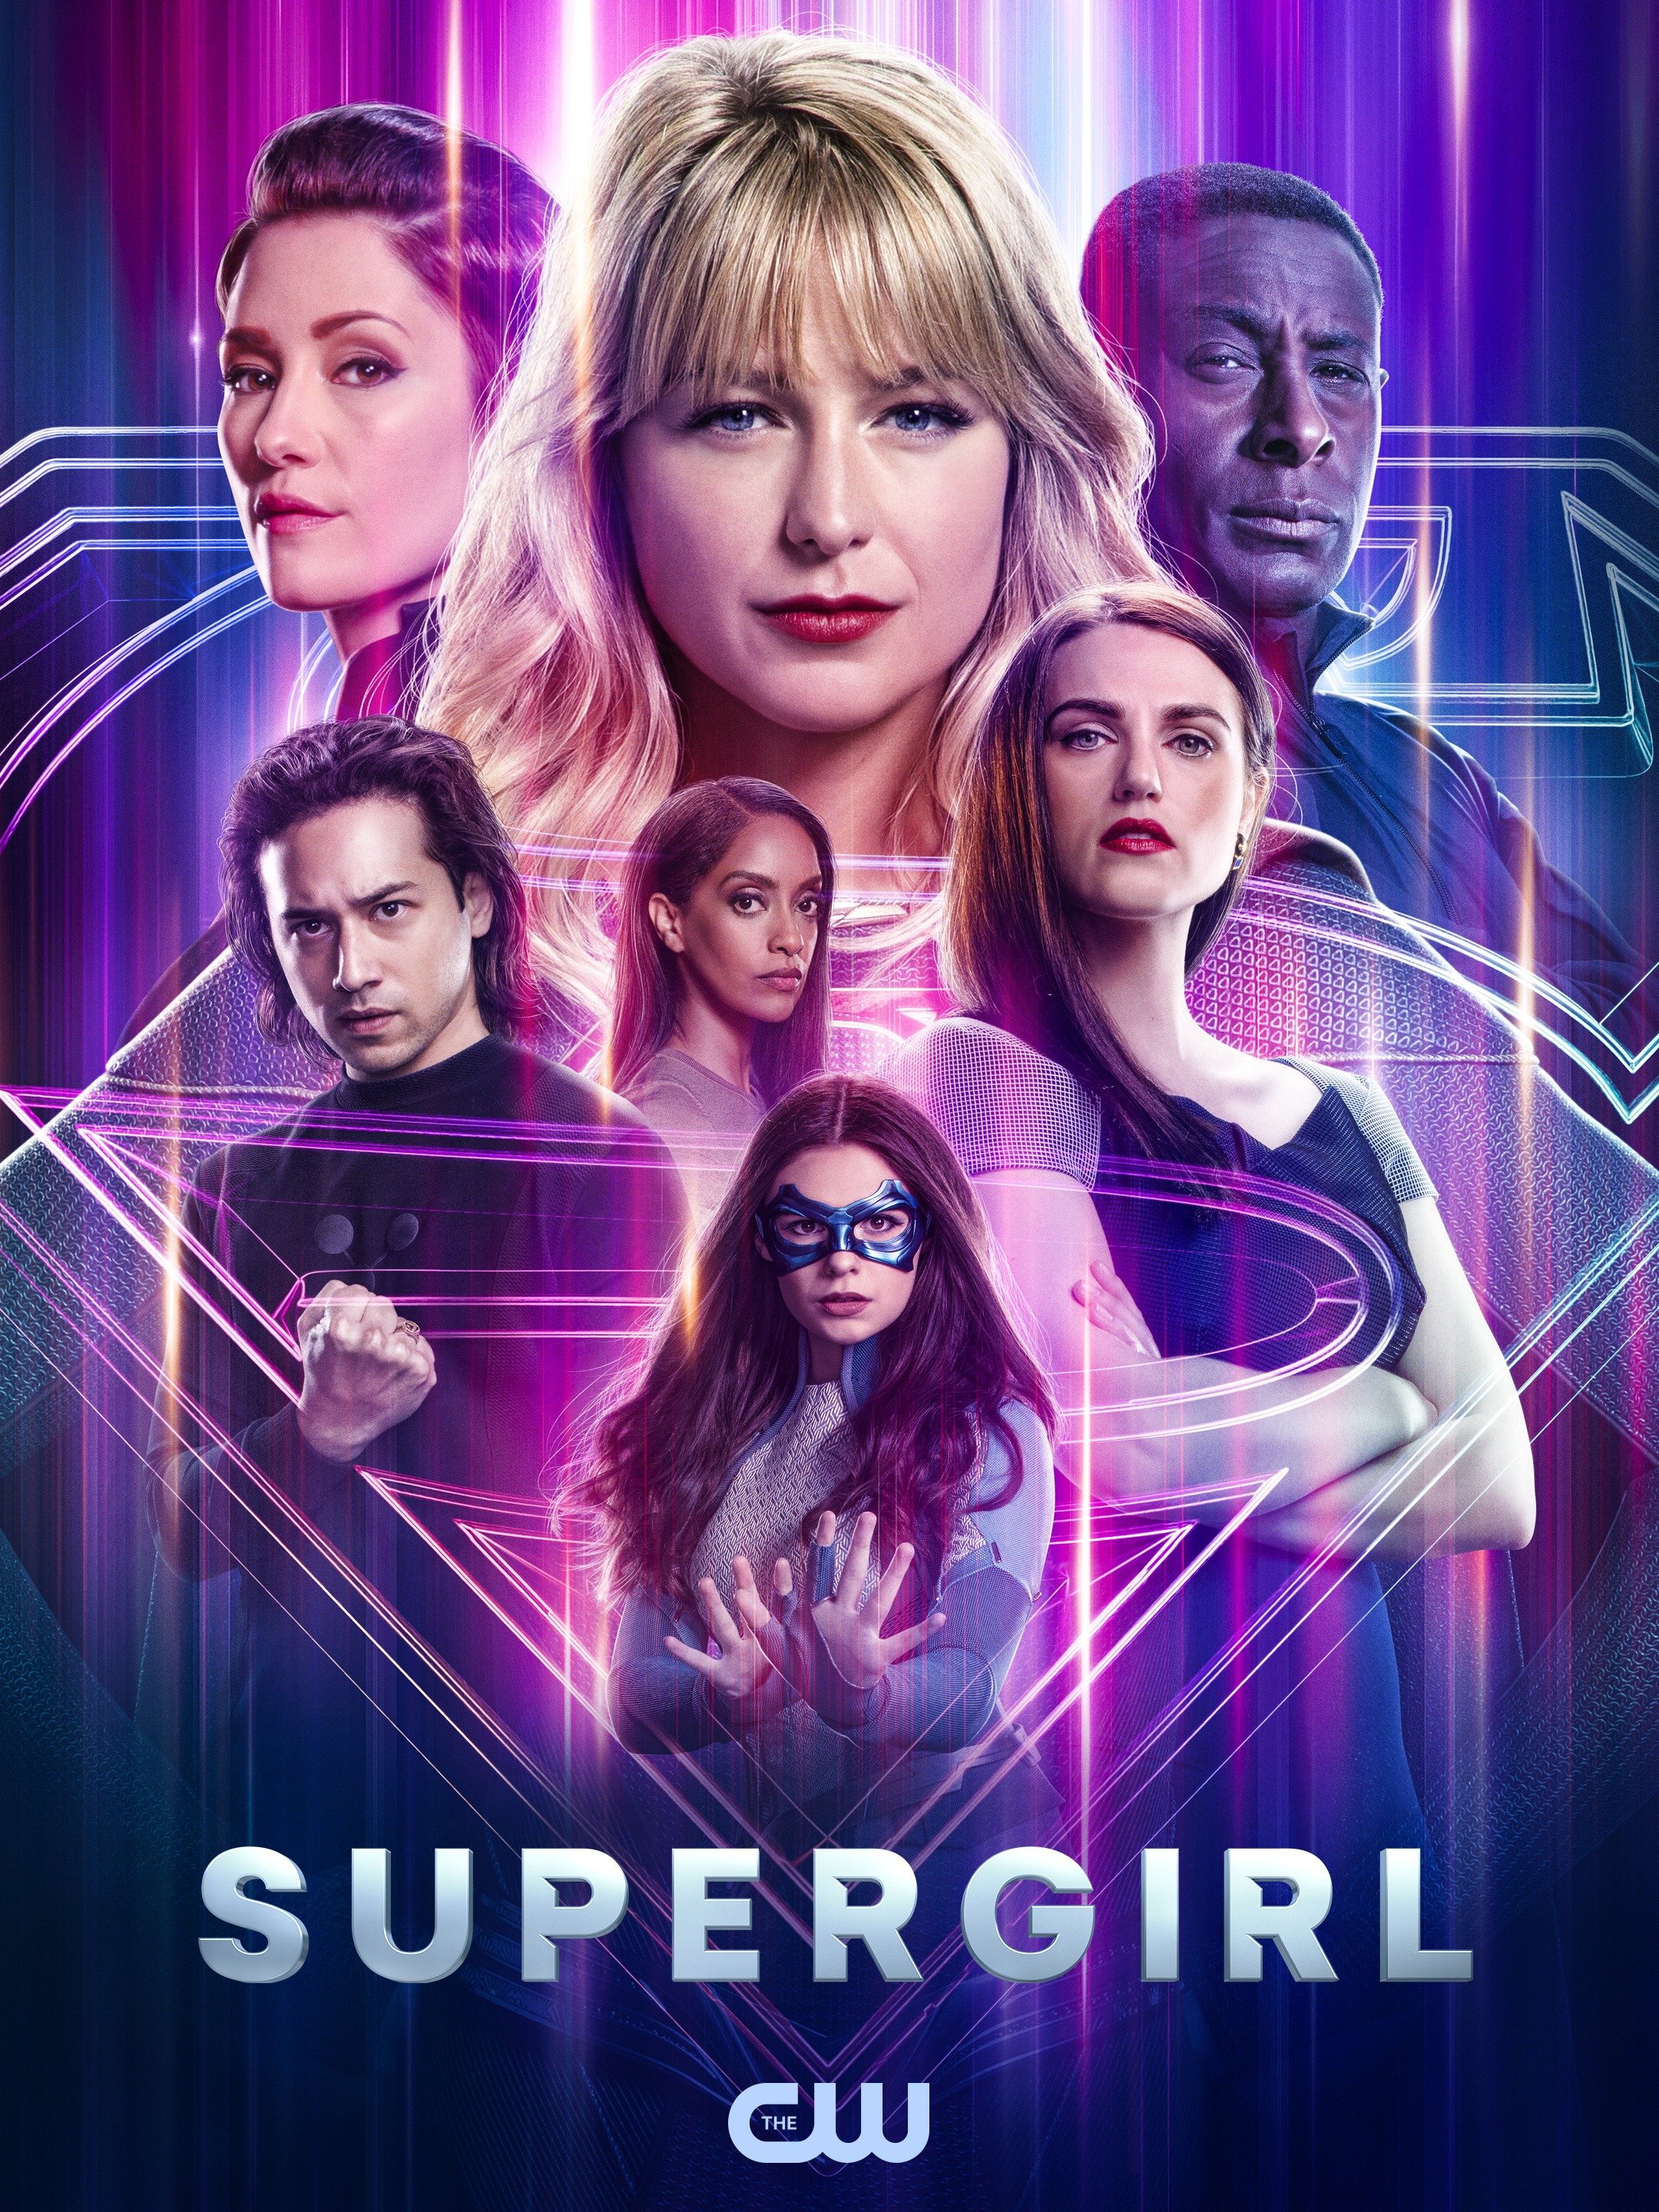 supergirl season 1 episode 11 watch online